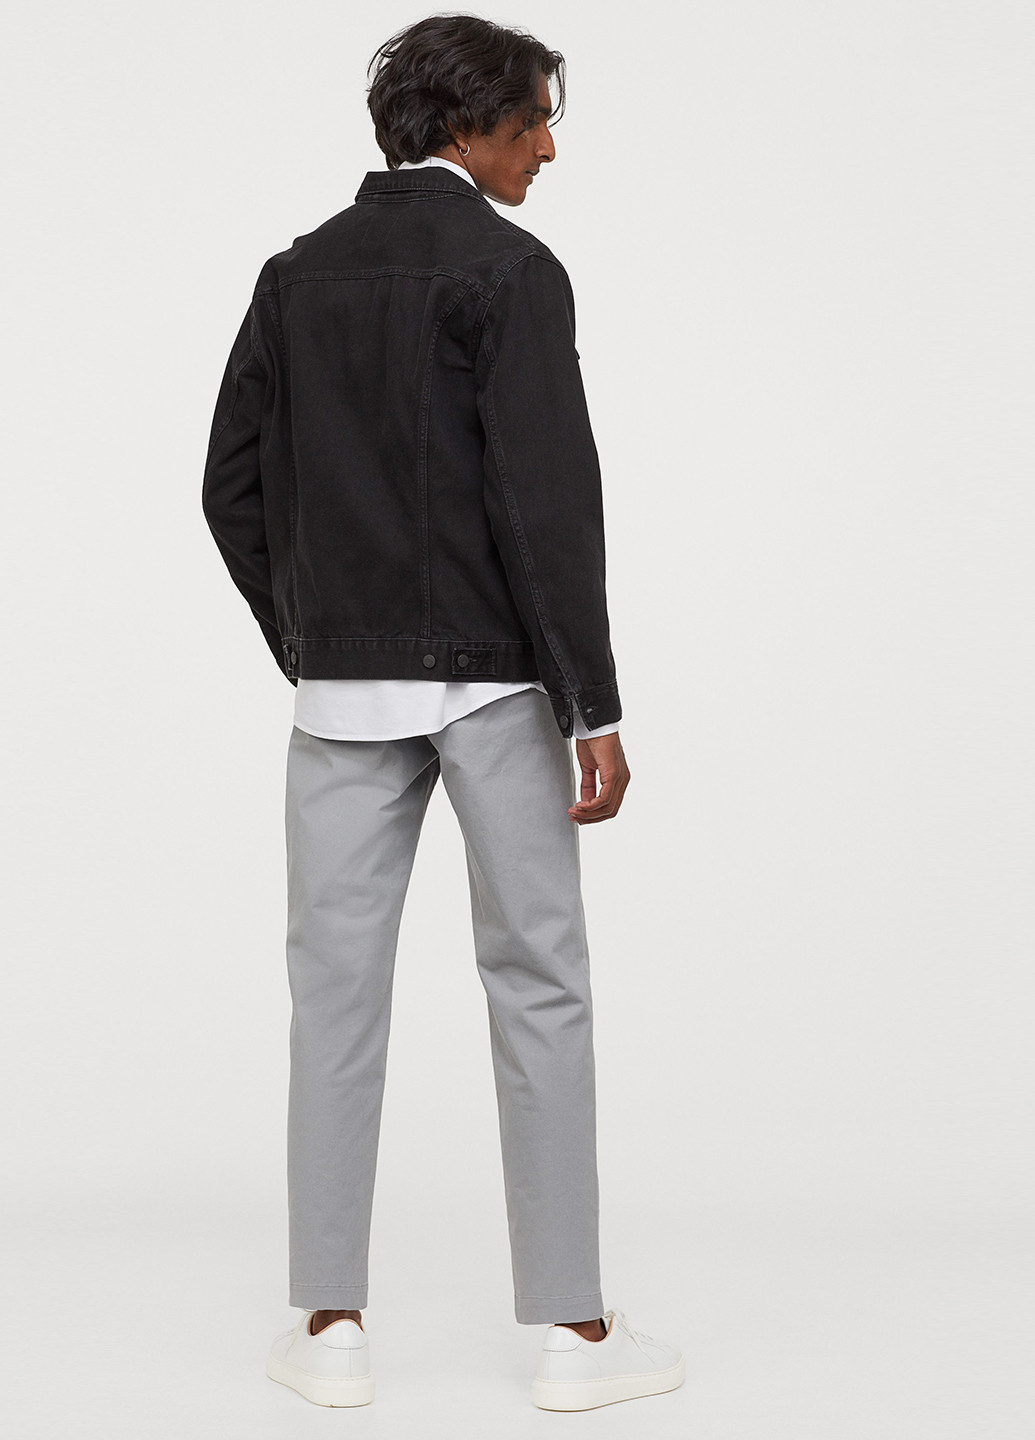 Светло-серые кэжуал демисезонные чиносы, зауженные, укороченные брюки H&M